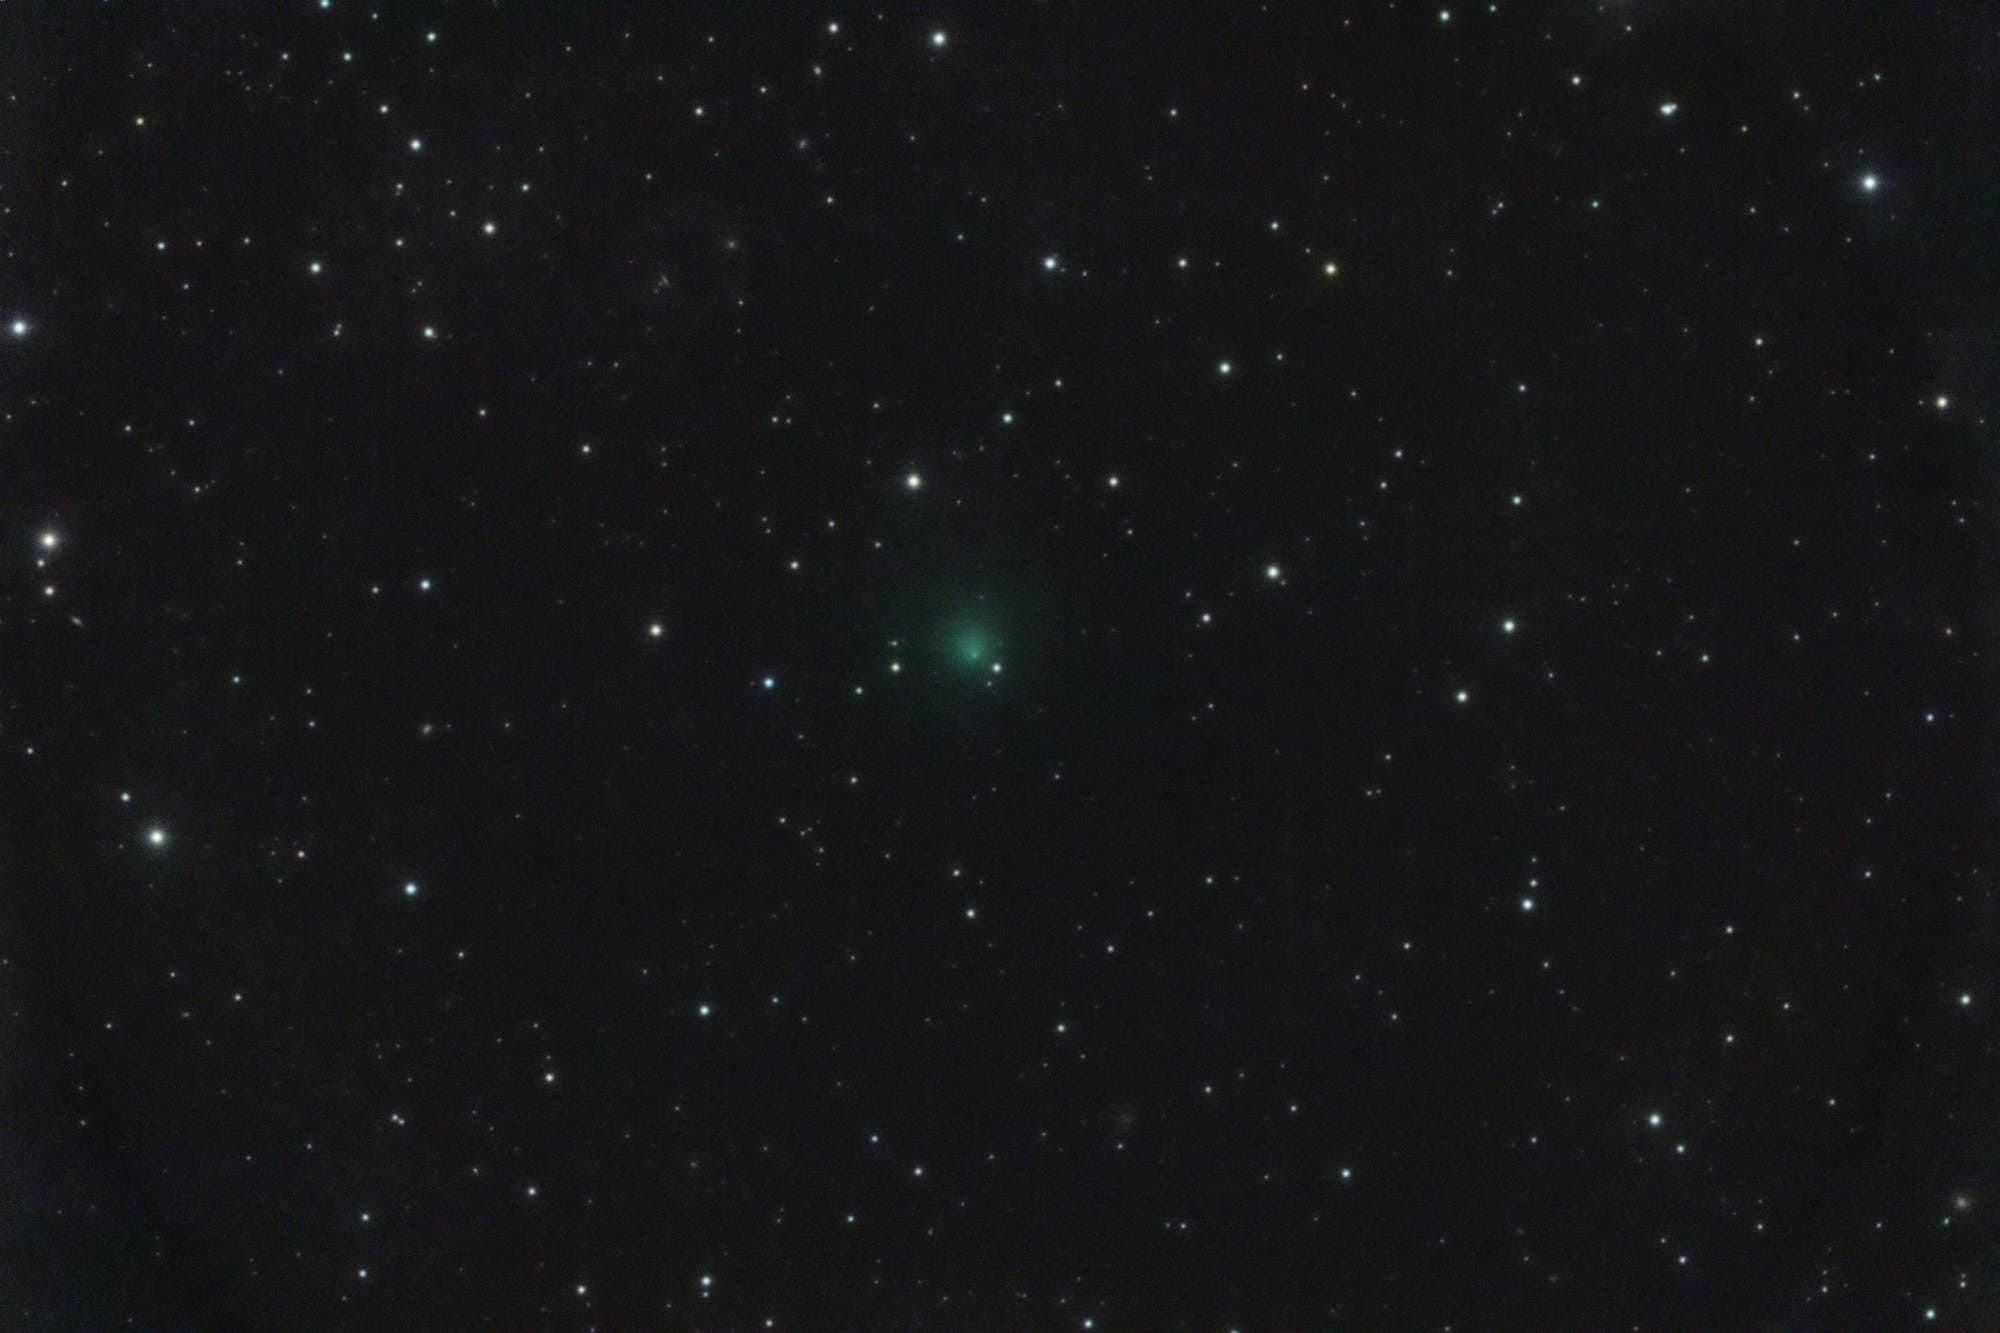 Return of the comet Encke